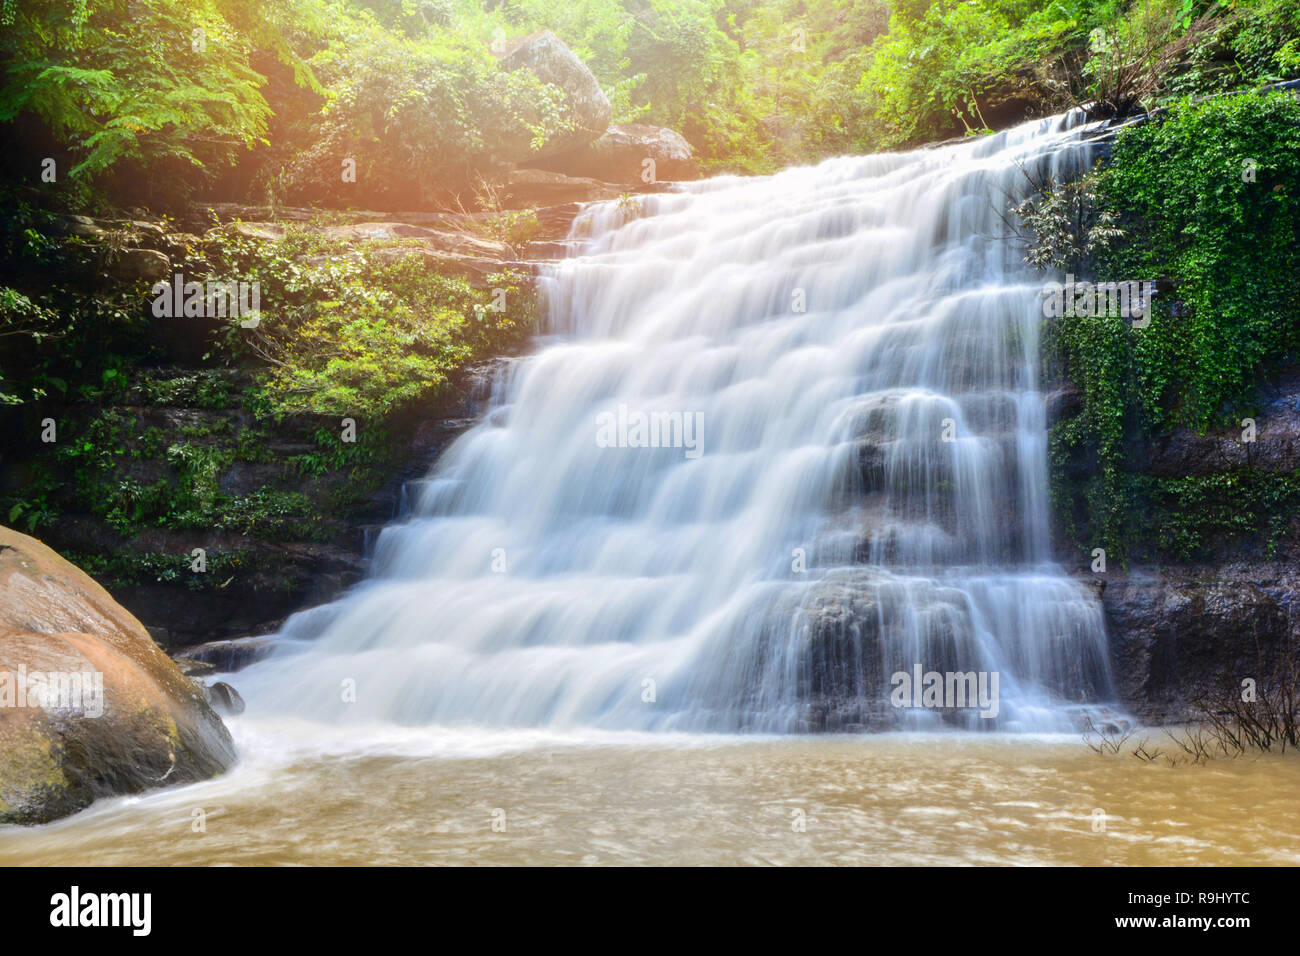 Wasserfall im Dschungel Natur regen Wald in der Regenzeit/Wasserfall in Loei Thailand Stockfoto